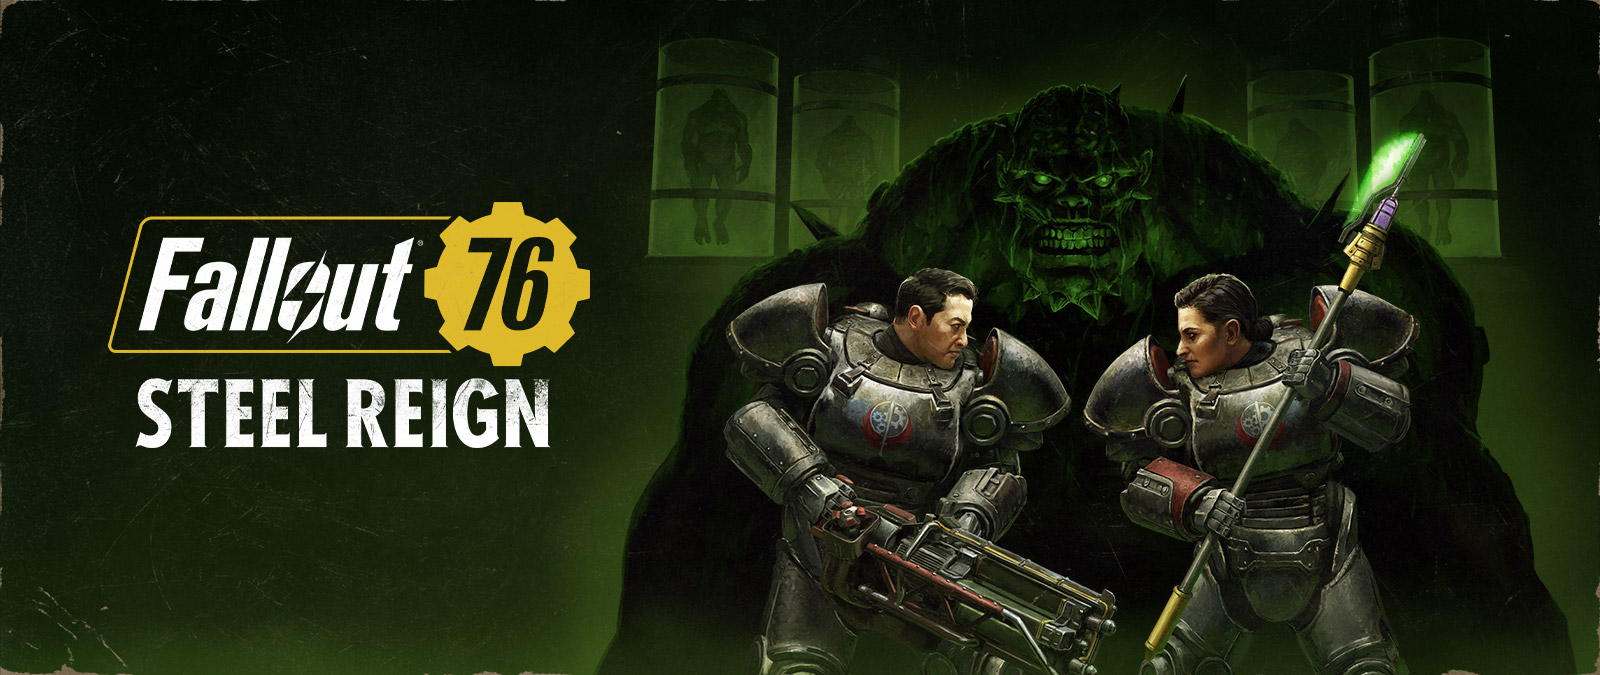 Fallout 76 Steel Reign, dvě postavy v obrněných kombinézách čelí velké příšeře na pozadí.